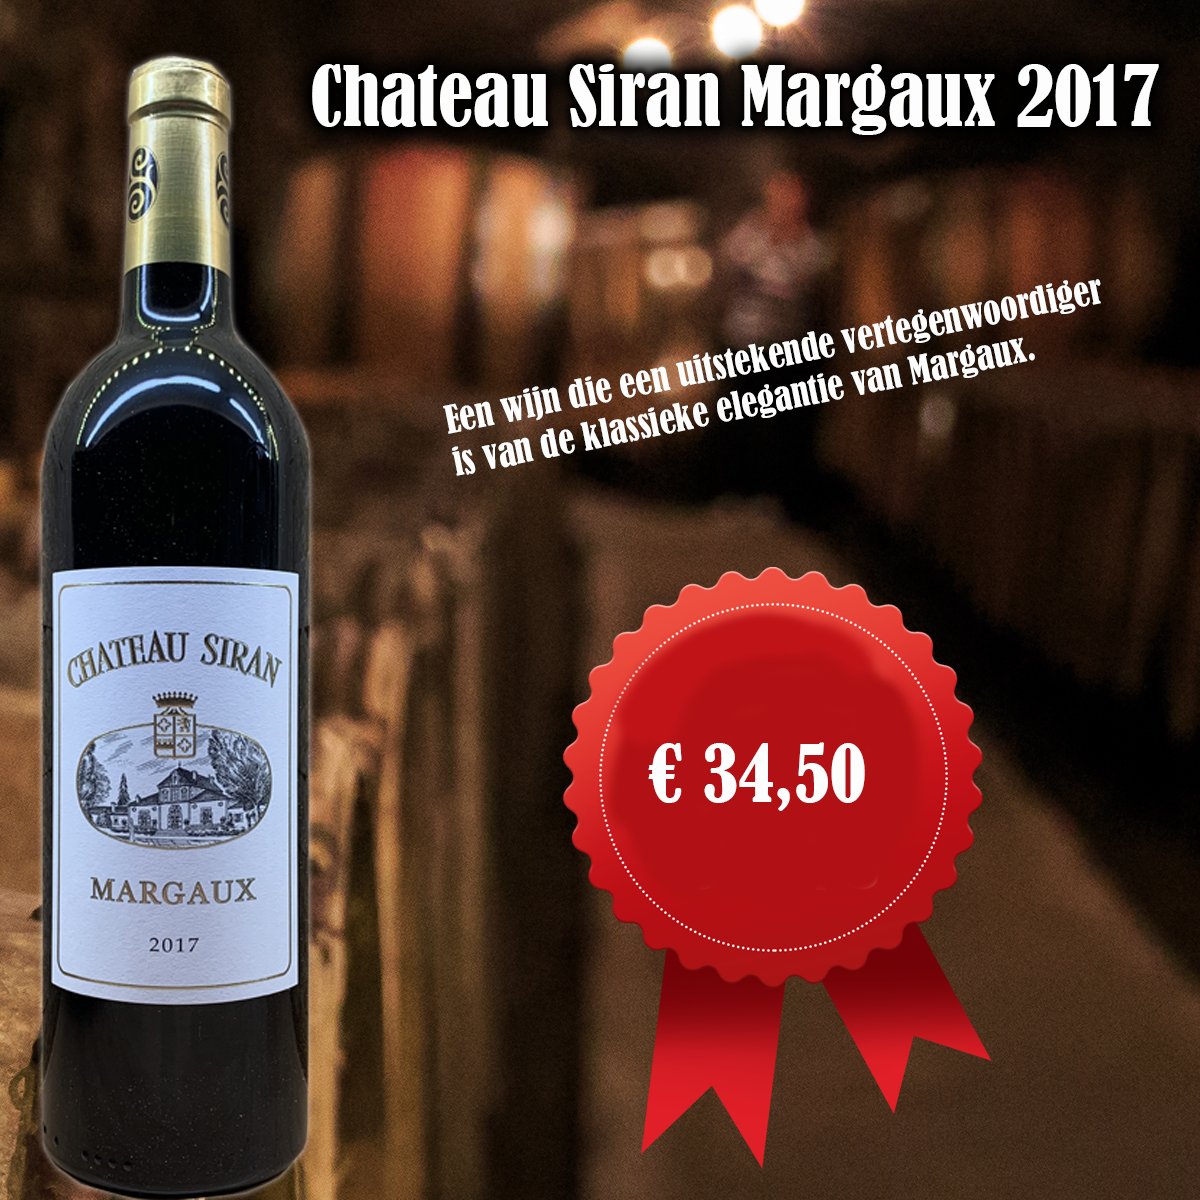 Chateau Siran Margaux
wijnhandelgrandcave.nl/nl/1229-chatea…
 #wijn #wine #winelover #vino #instawine #winestagram #wijntje #winetime #wijnisfijn #winegeek #wein #wijnen #genieten #food #yerseke #zeeland #wijnhandelgrandcave #wijnonline #winelovers